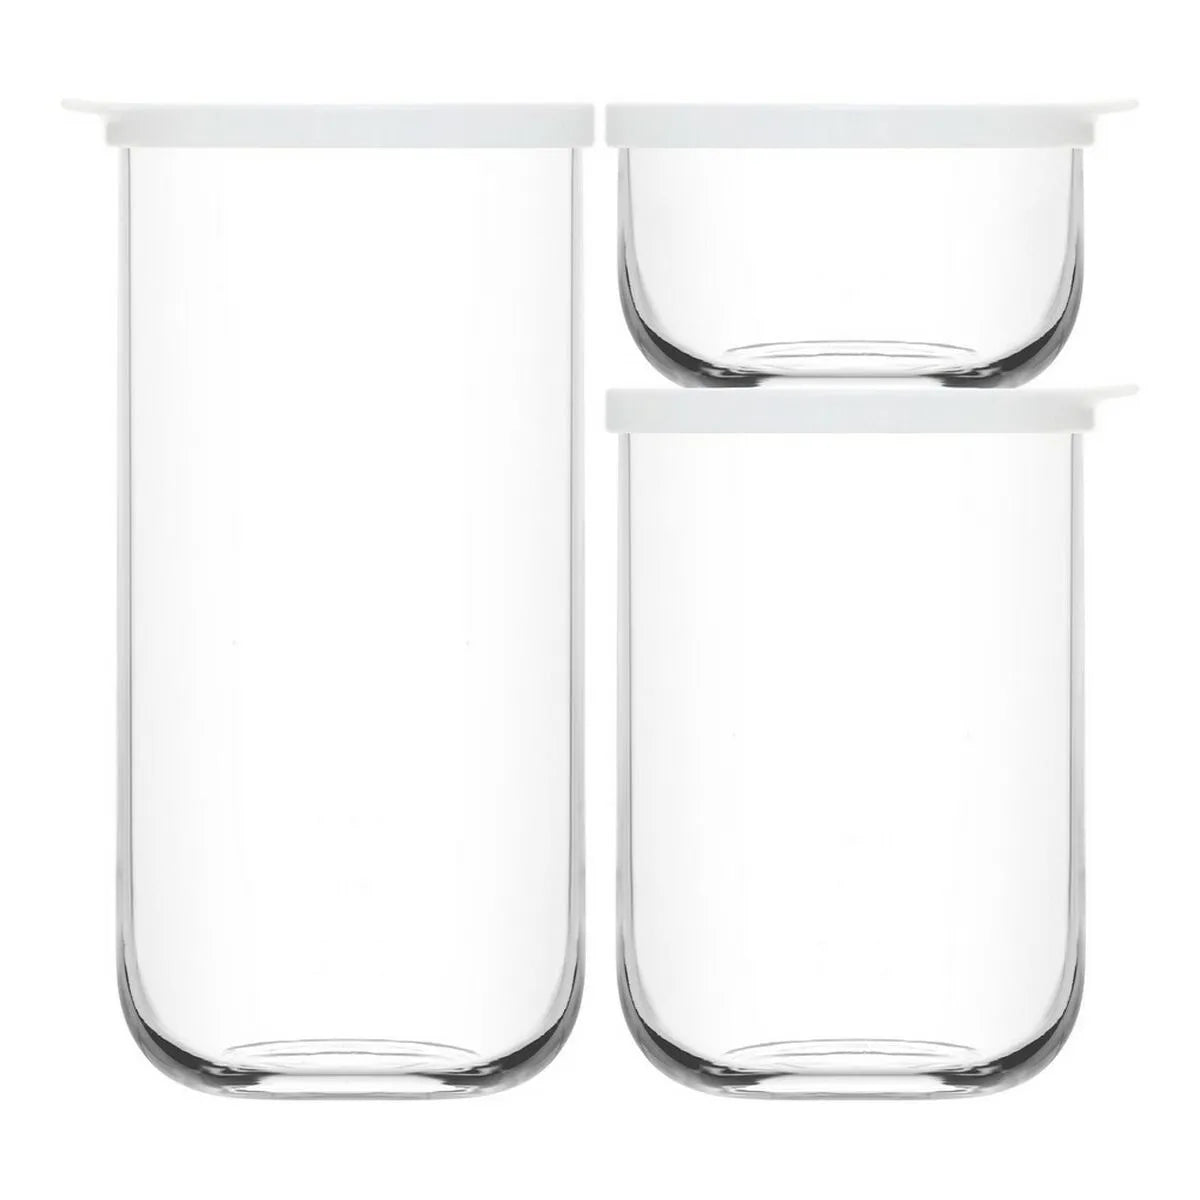 3 glassbeholdere i størrelser 4 liter, 1 liter og 380 ml med hvite lokk